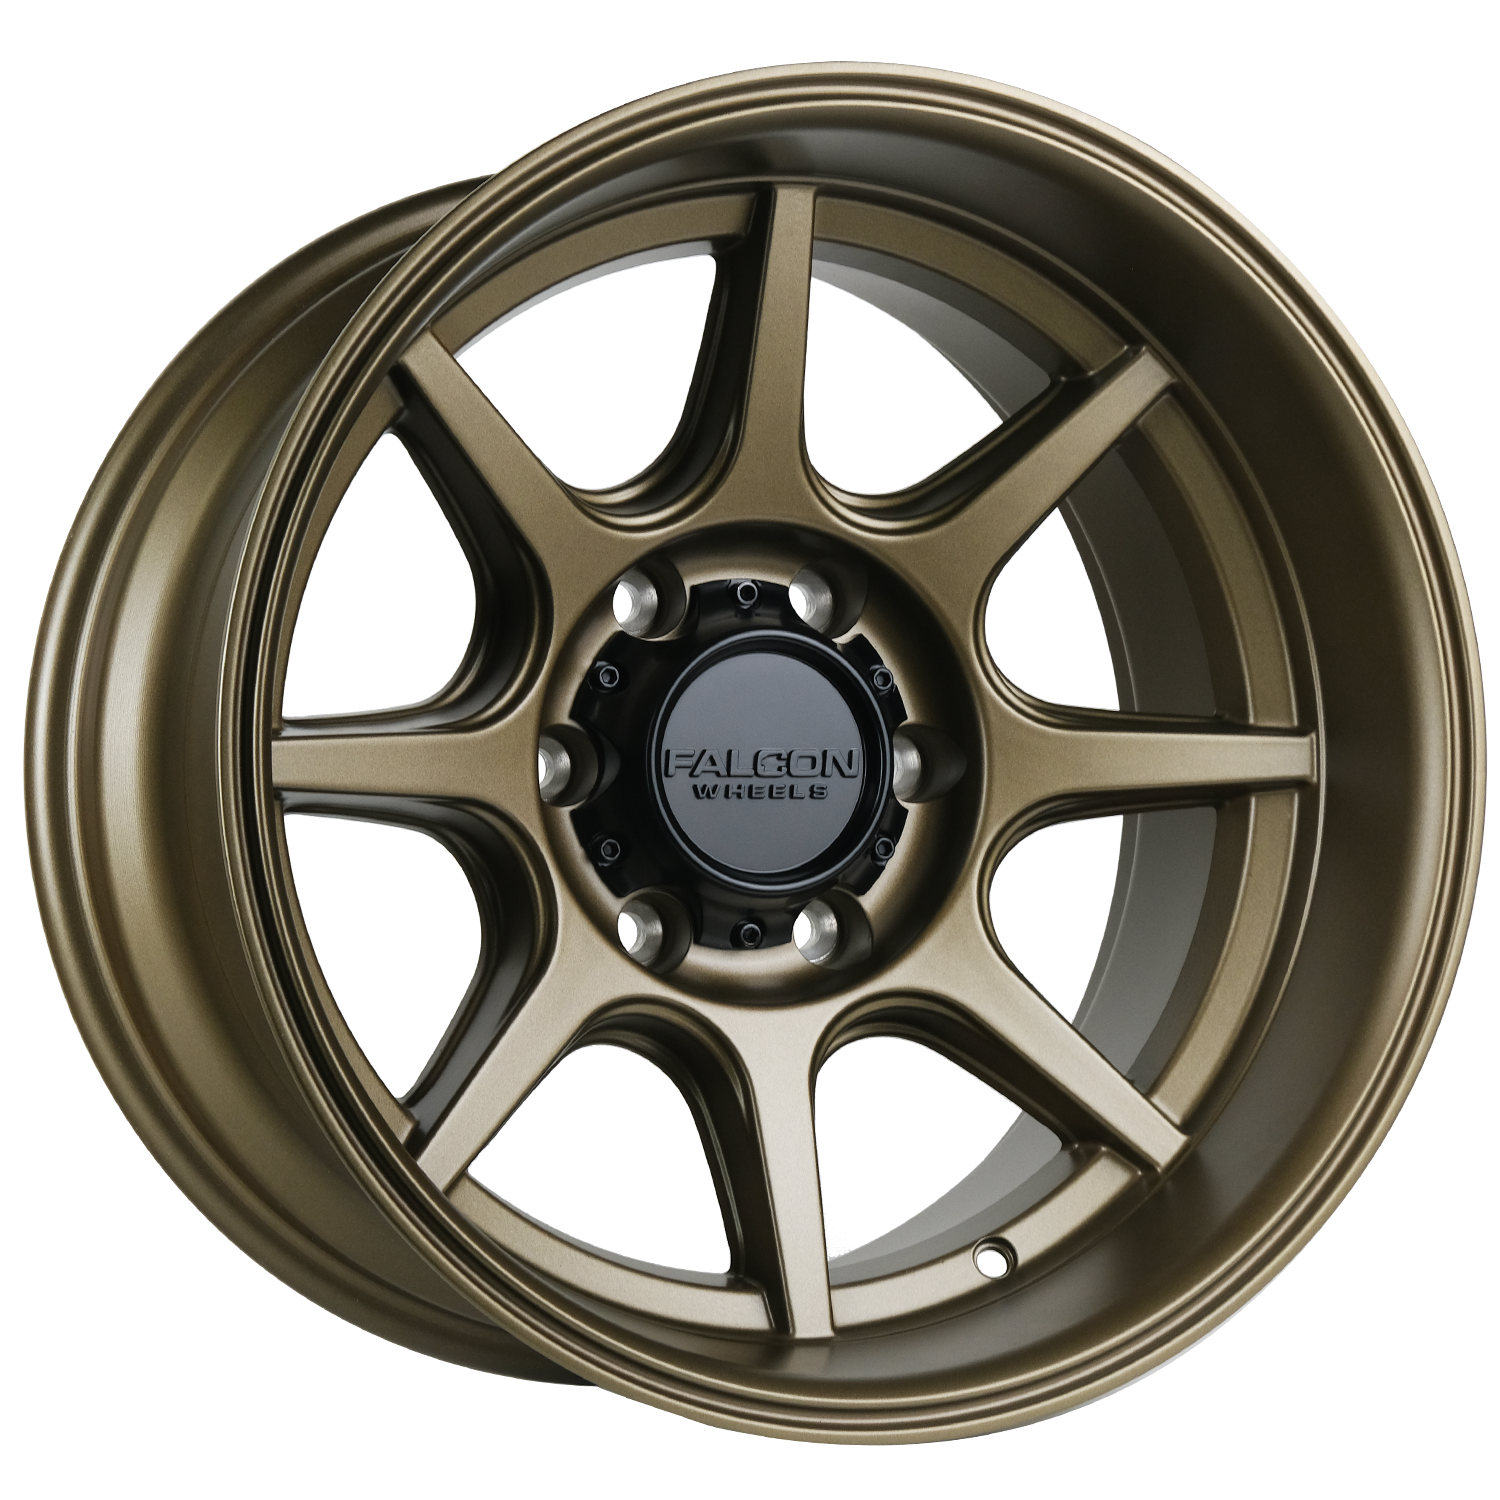 T8 "Seeker"- Bronze 17x9 - Premium Wheels from Falcon Off-Road Wheels - Just $295! Shop now at Falcon Off-Road Wheels 